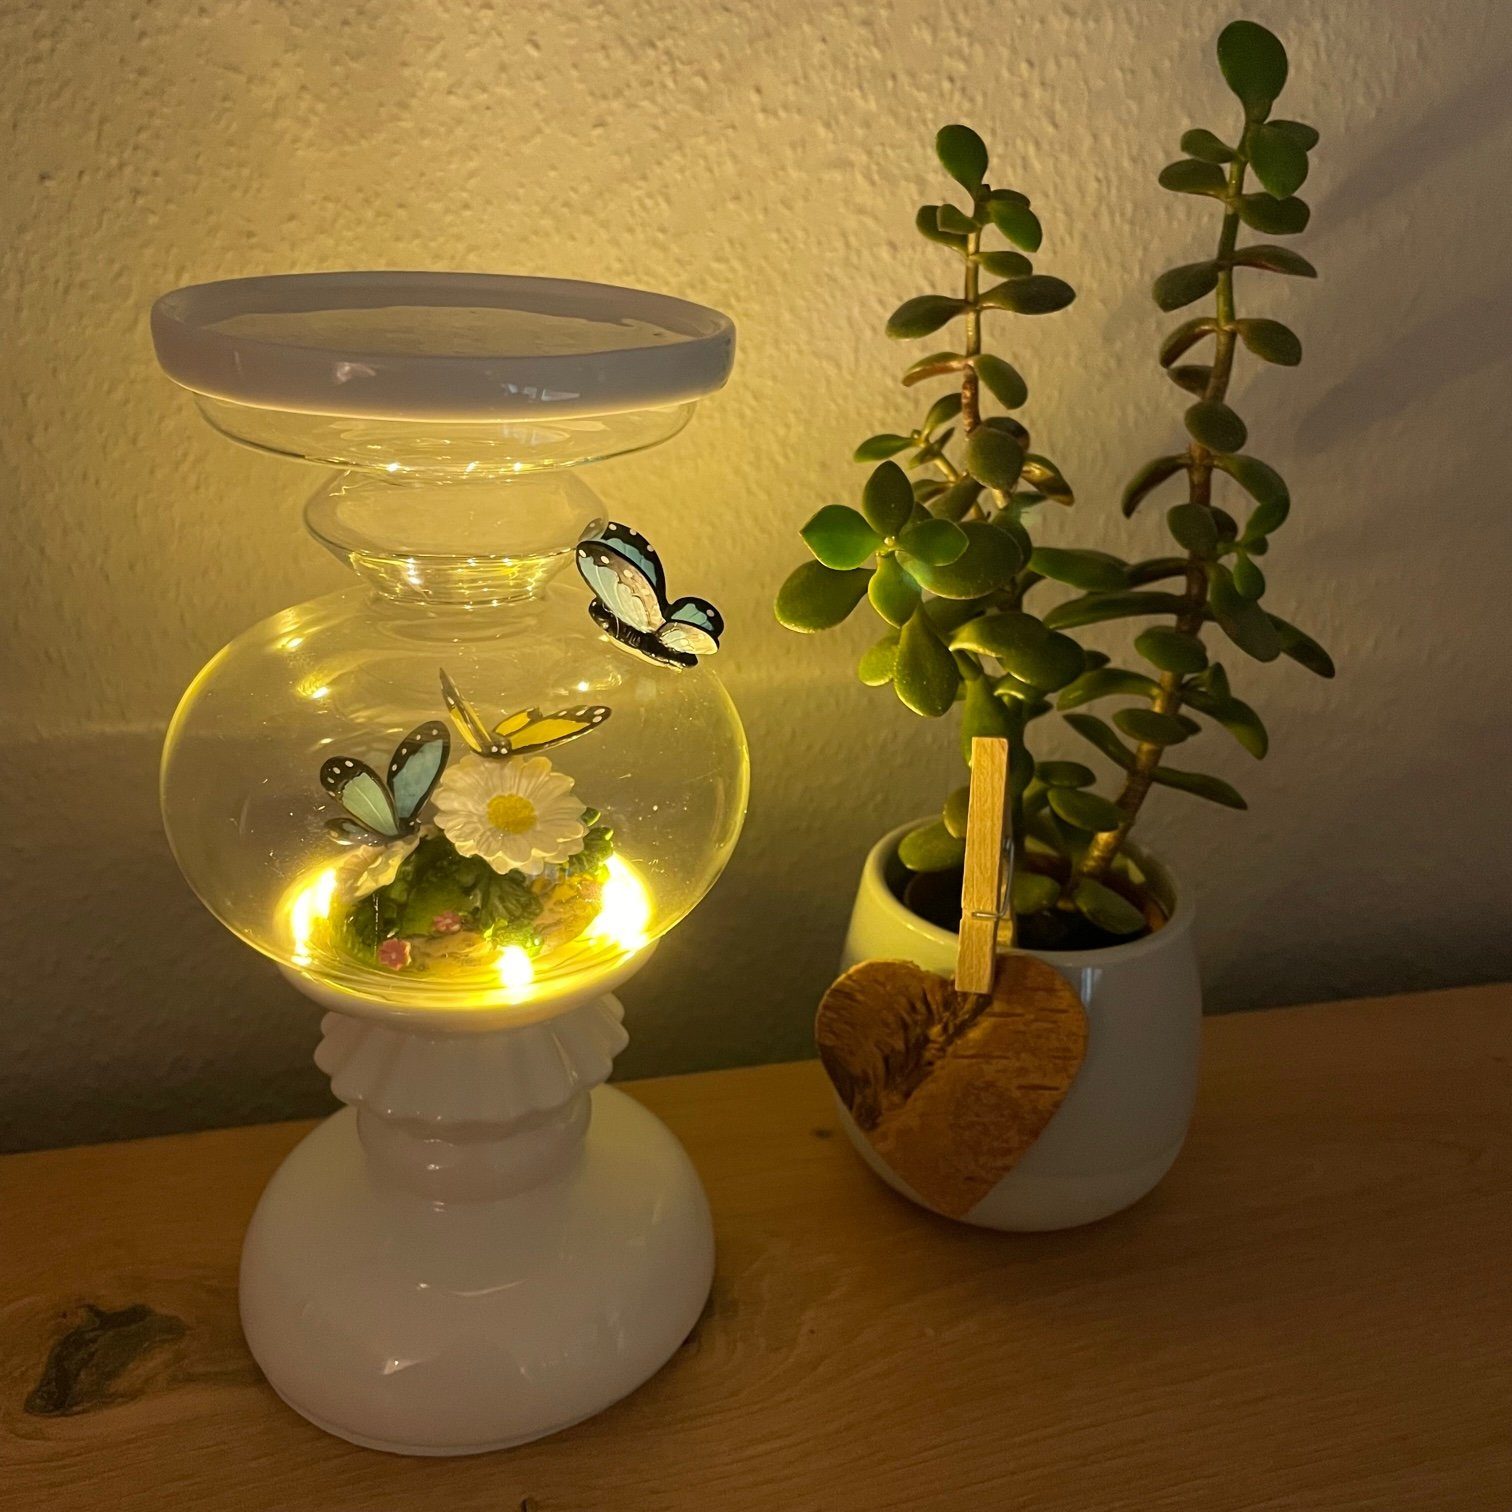 Online-Fuchs Kerzenständer aus Porzellan und Glas mit Schmetterlingen in 3D-Optik, Kerzenhalter (im Inneren mit Blumen und Schmetterlingen verziert, beleuchtet, inkl. 6 Stunden-Timer, Maße: 18 x 10 cm), für Stumpenkerzen bis zu 10 cm Durchmesser geeignet